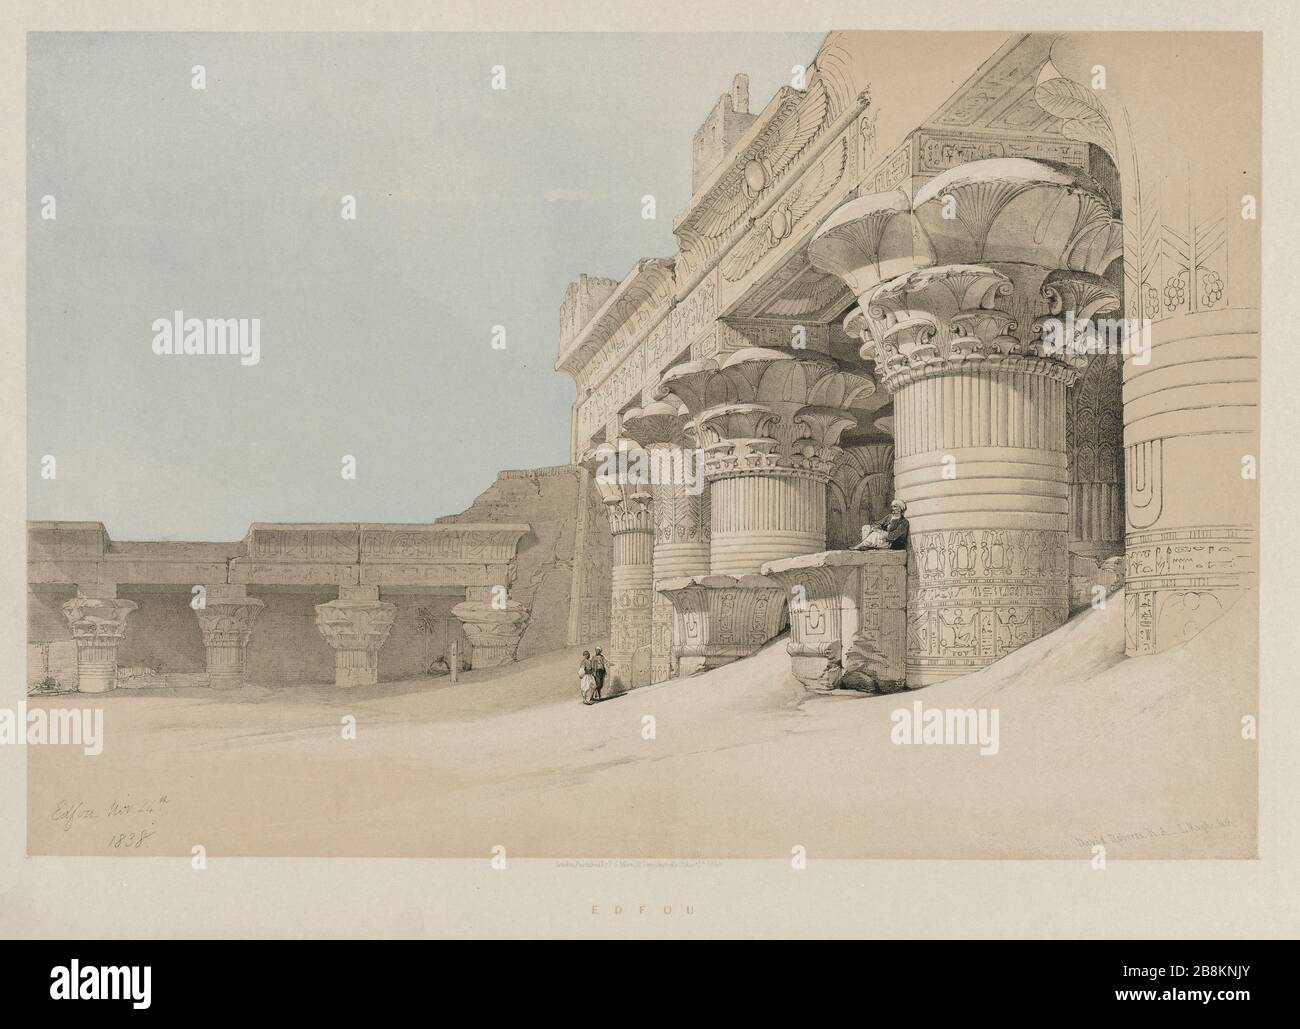 Tempio di Edfou Egitto e Nubia, Volume II: Edfou, 1846. Louis Haghe (British, 1806-1885), F. G. Moon, 20 Threadneedle Street, Londra, dopo David Roberts (British, 1796-1864). Litografia a colori; foglio: 43 x 60.2 cm (16 15/16 x 23 11/16 in.); immagine: 32.7 x 48.8 cm (12 7/8 x 19 3/16 in.). Foto Stock